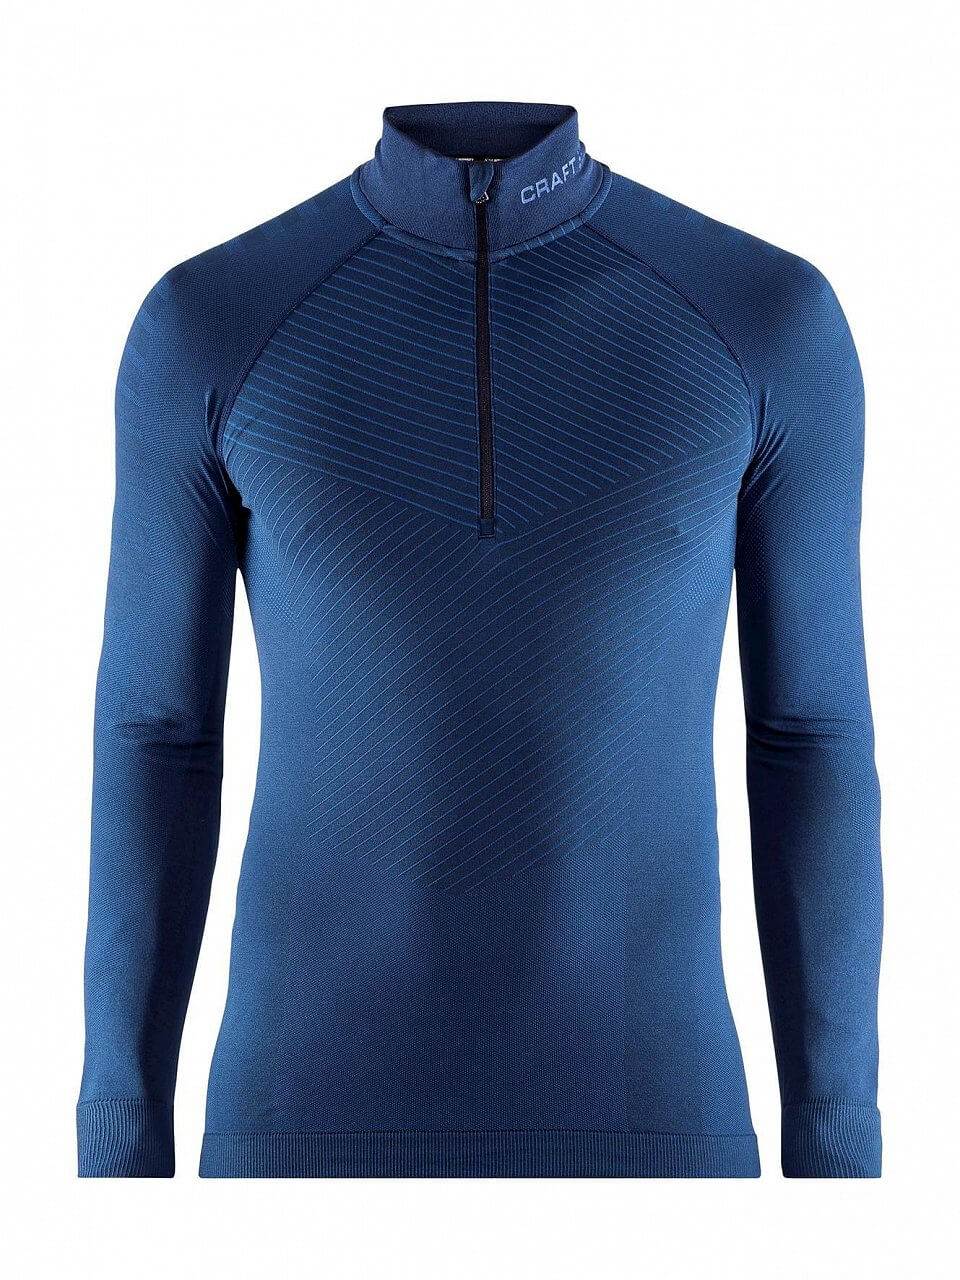 Pánské sportovní tričko Craft Triko Active Intensity Zip tmavě modrá